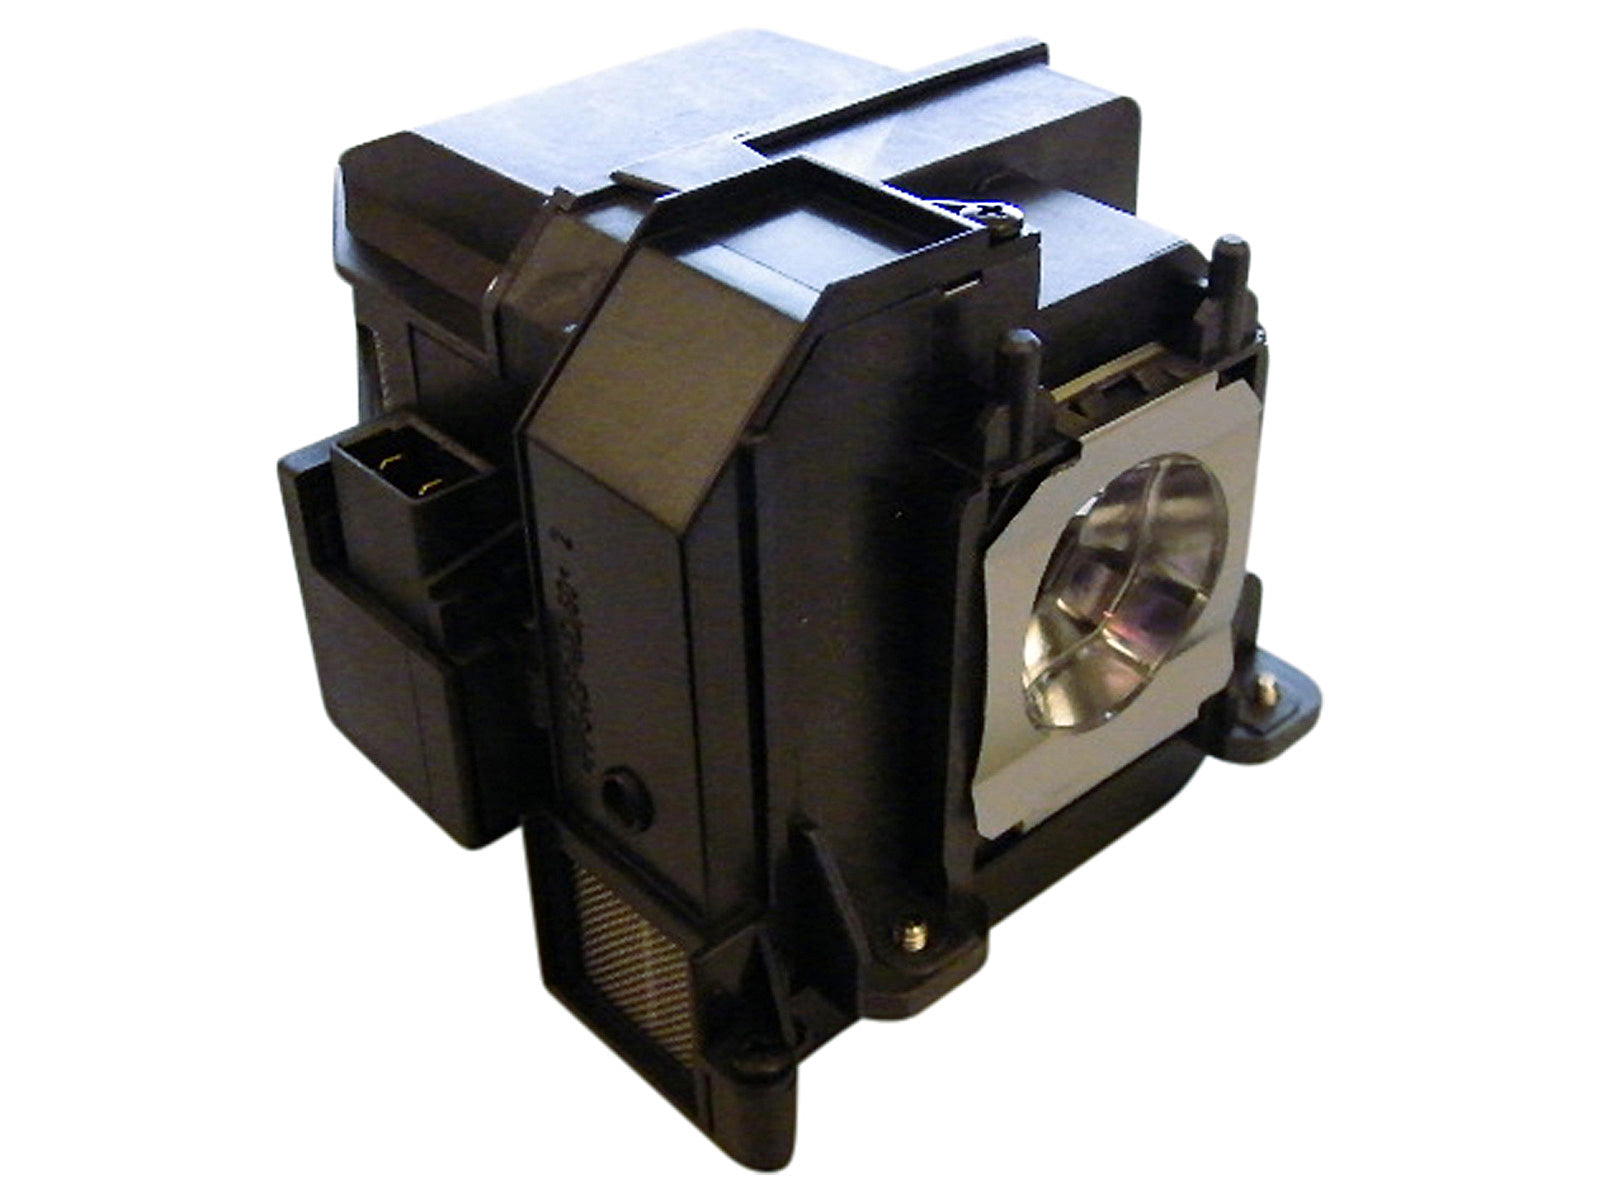 azurano Beamerlampe kompatibel mit EPSON ELPLP71, V13H010L71 für diverse Epson Projektoren der EB-Serie, BrightLink-Serie, PowerLite-Serie, Ersatzlampe mit Gehäuse, 245W - Bild 1